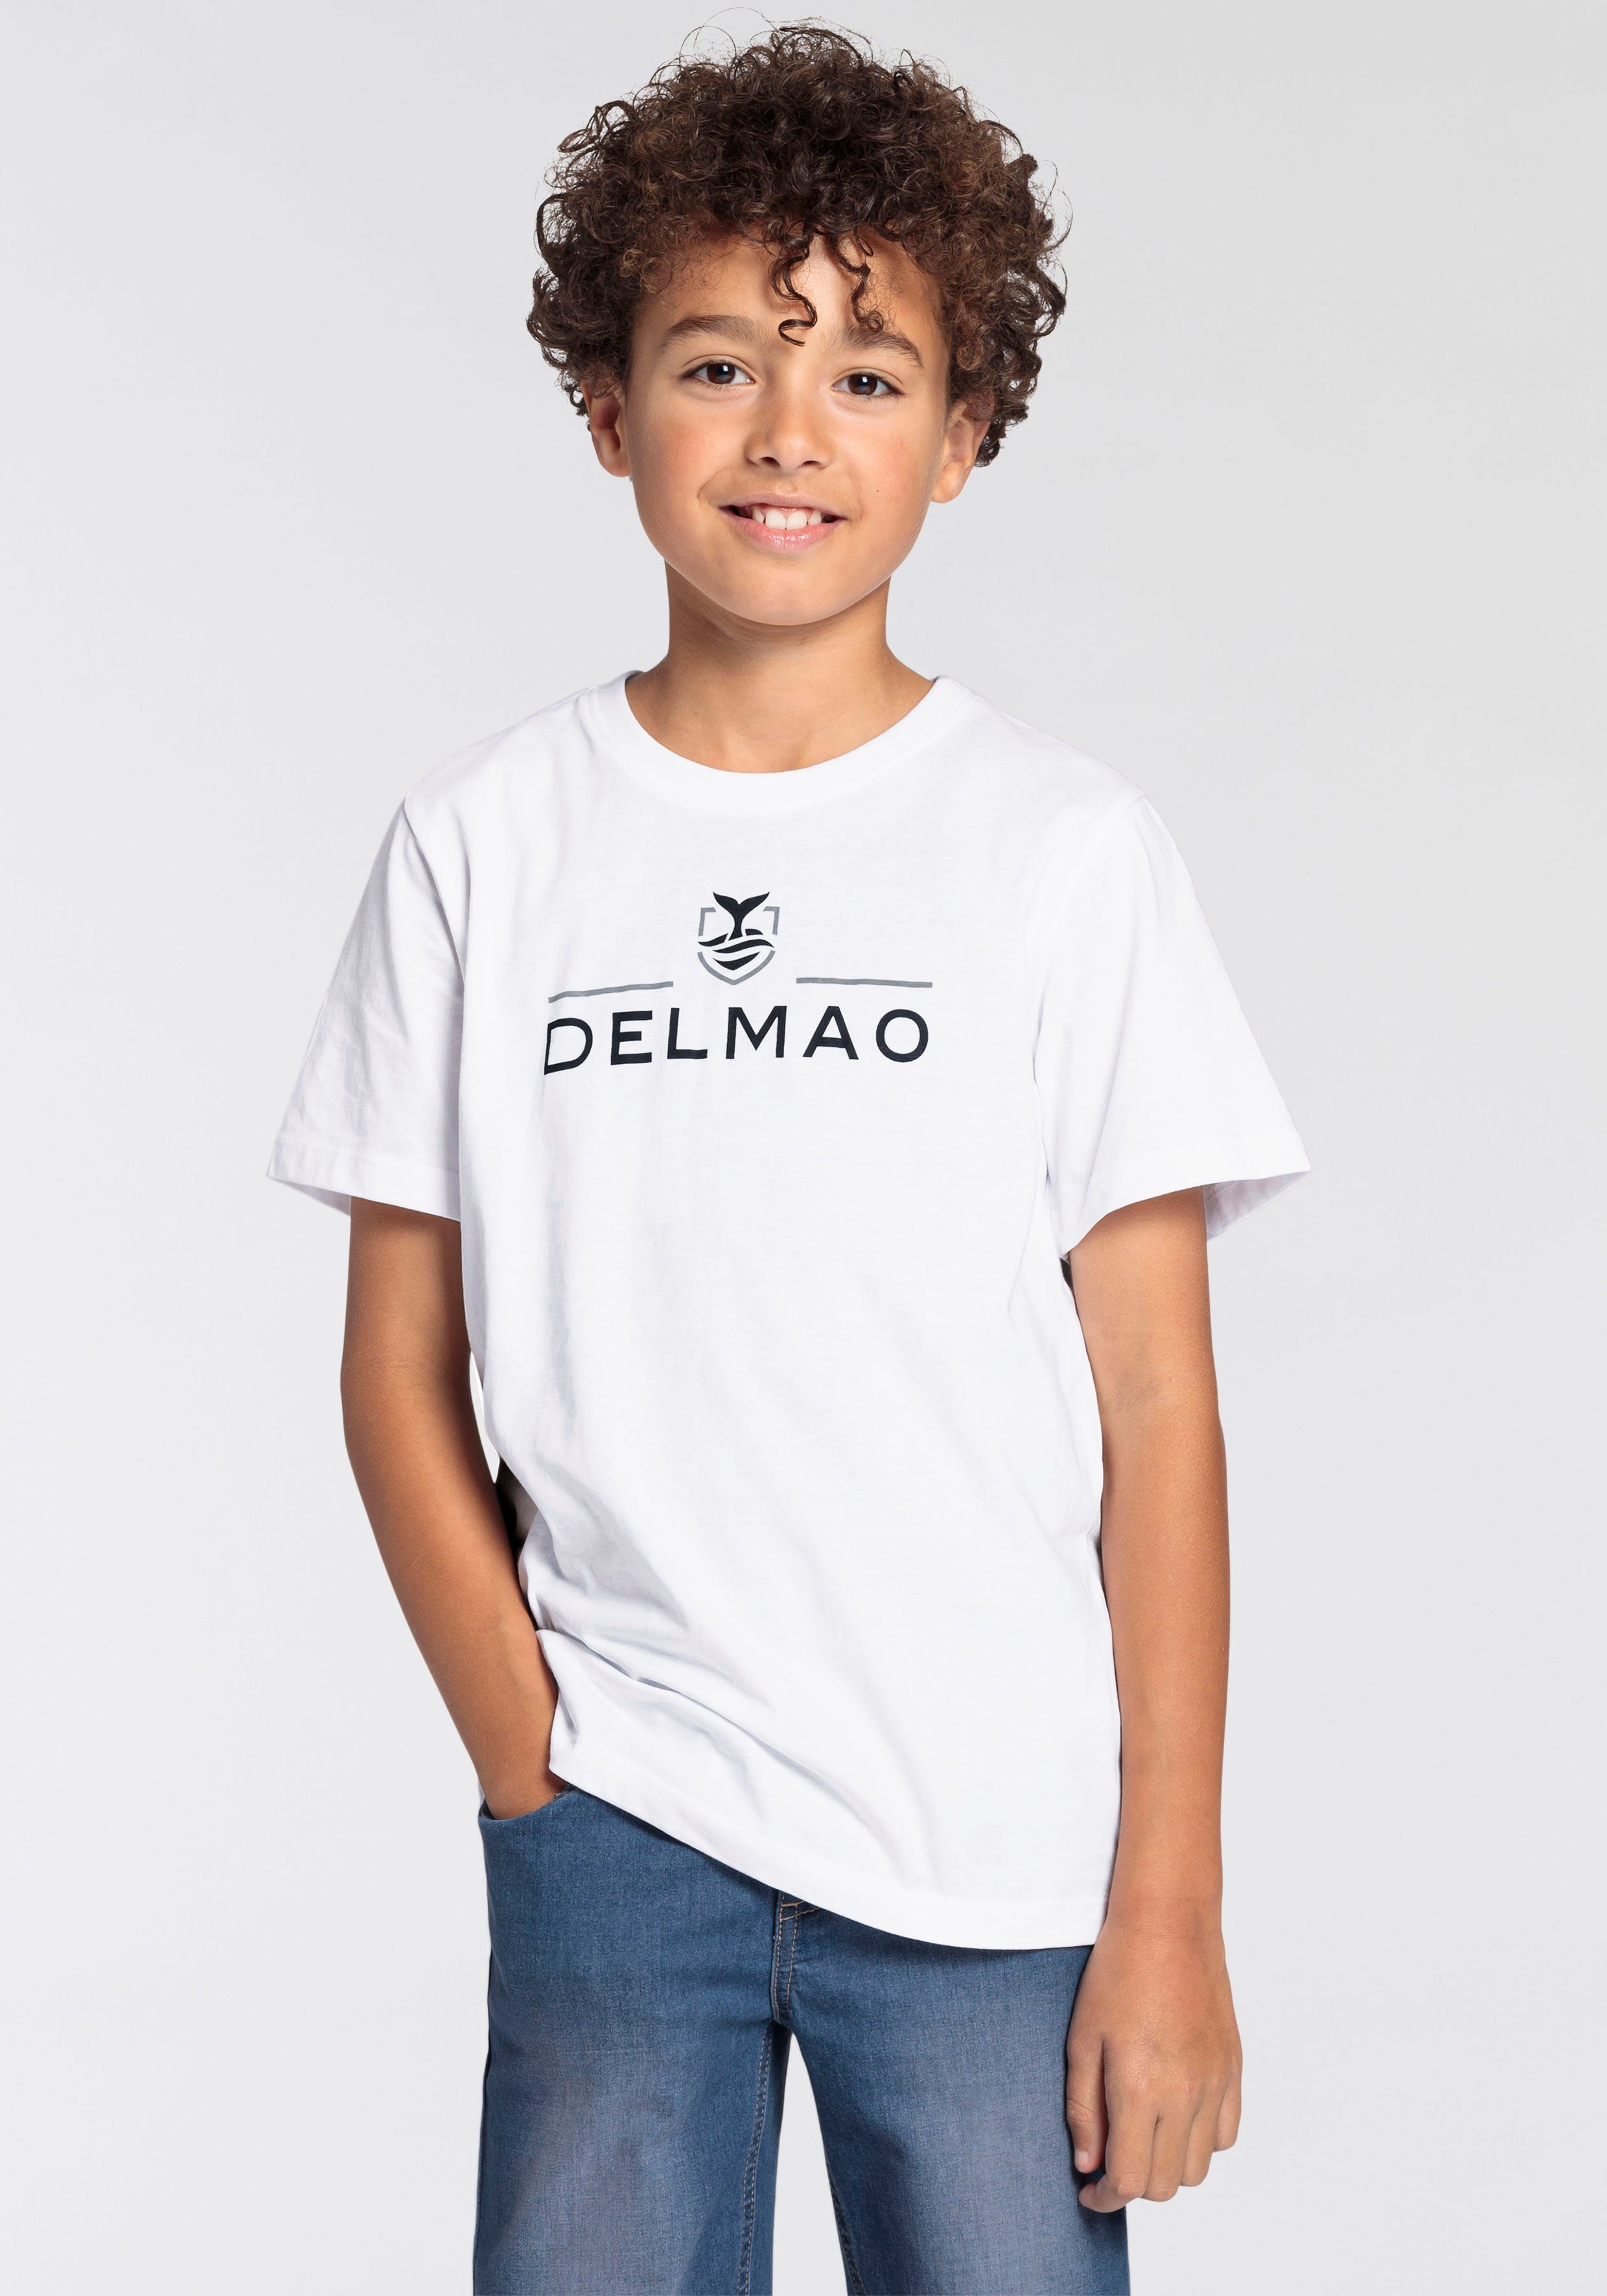 T-Shirt NEUE für MARKE, T-Shirt Jungen von für Logo-Print. DELMAO mit Delmao Jungen,